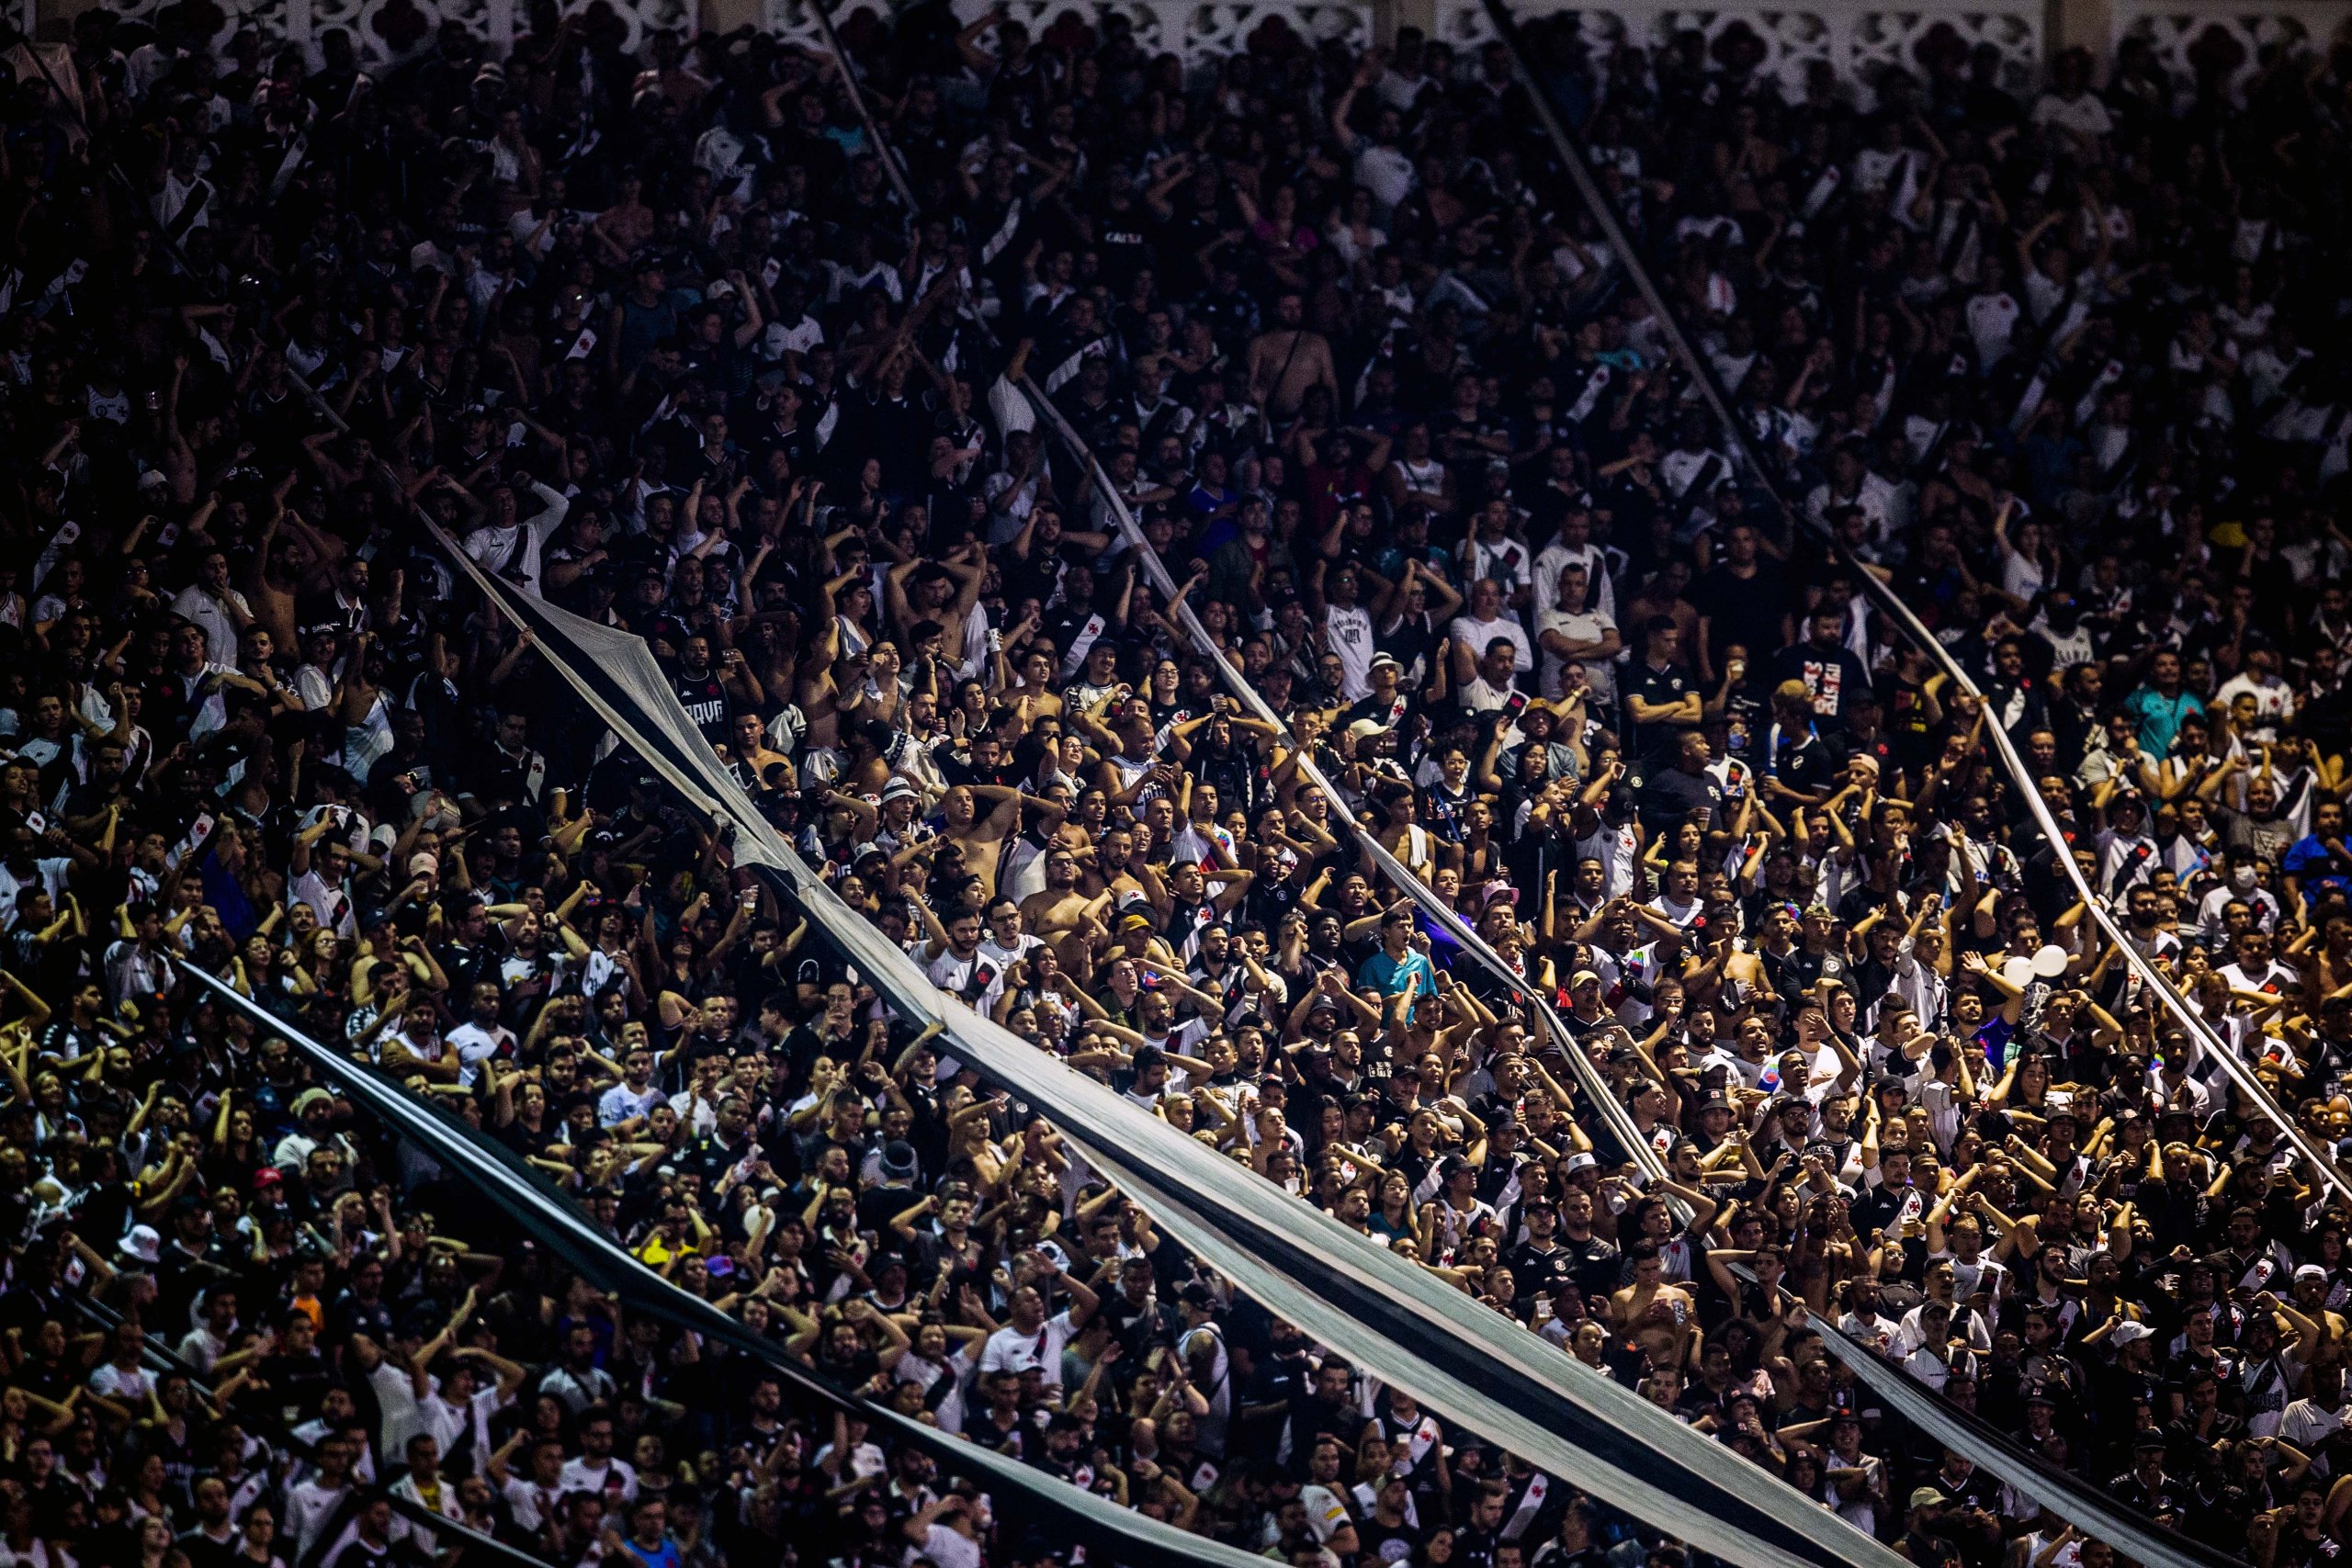 Vasco x Cruzeiro deve ter recorde de público do ano: 65 mil ingressos  vendidos